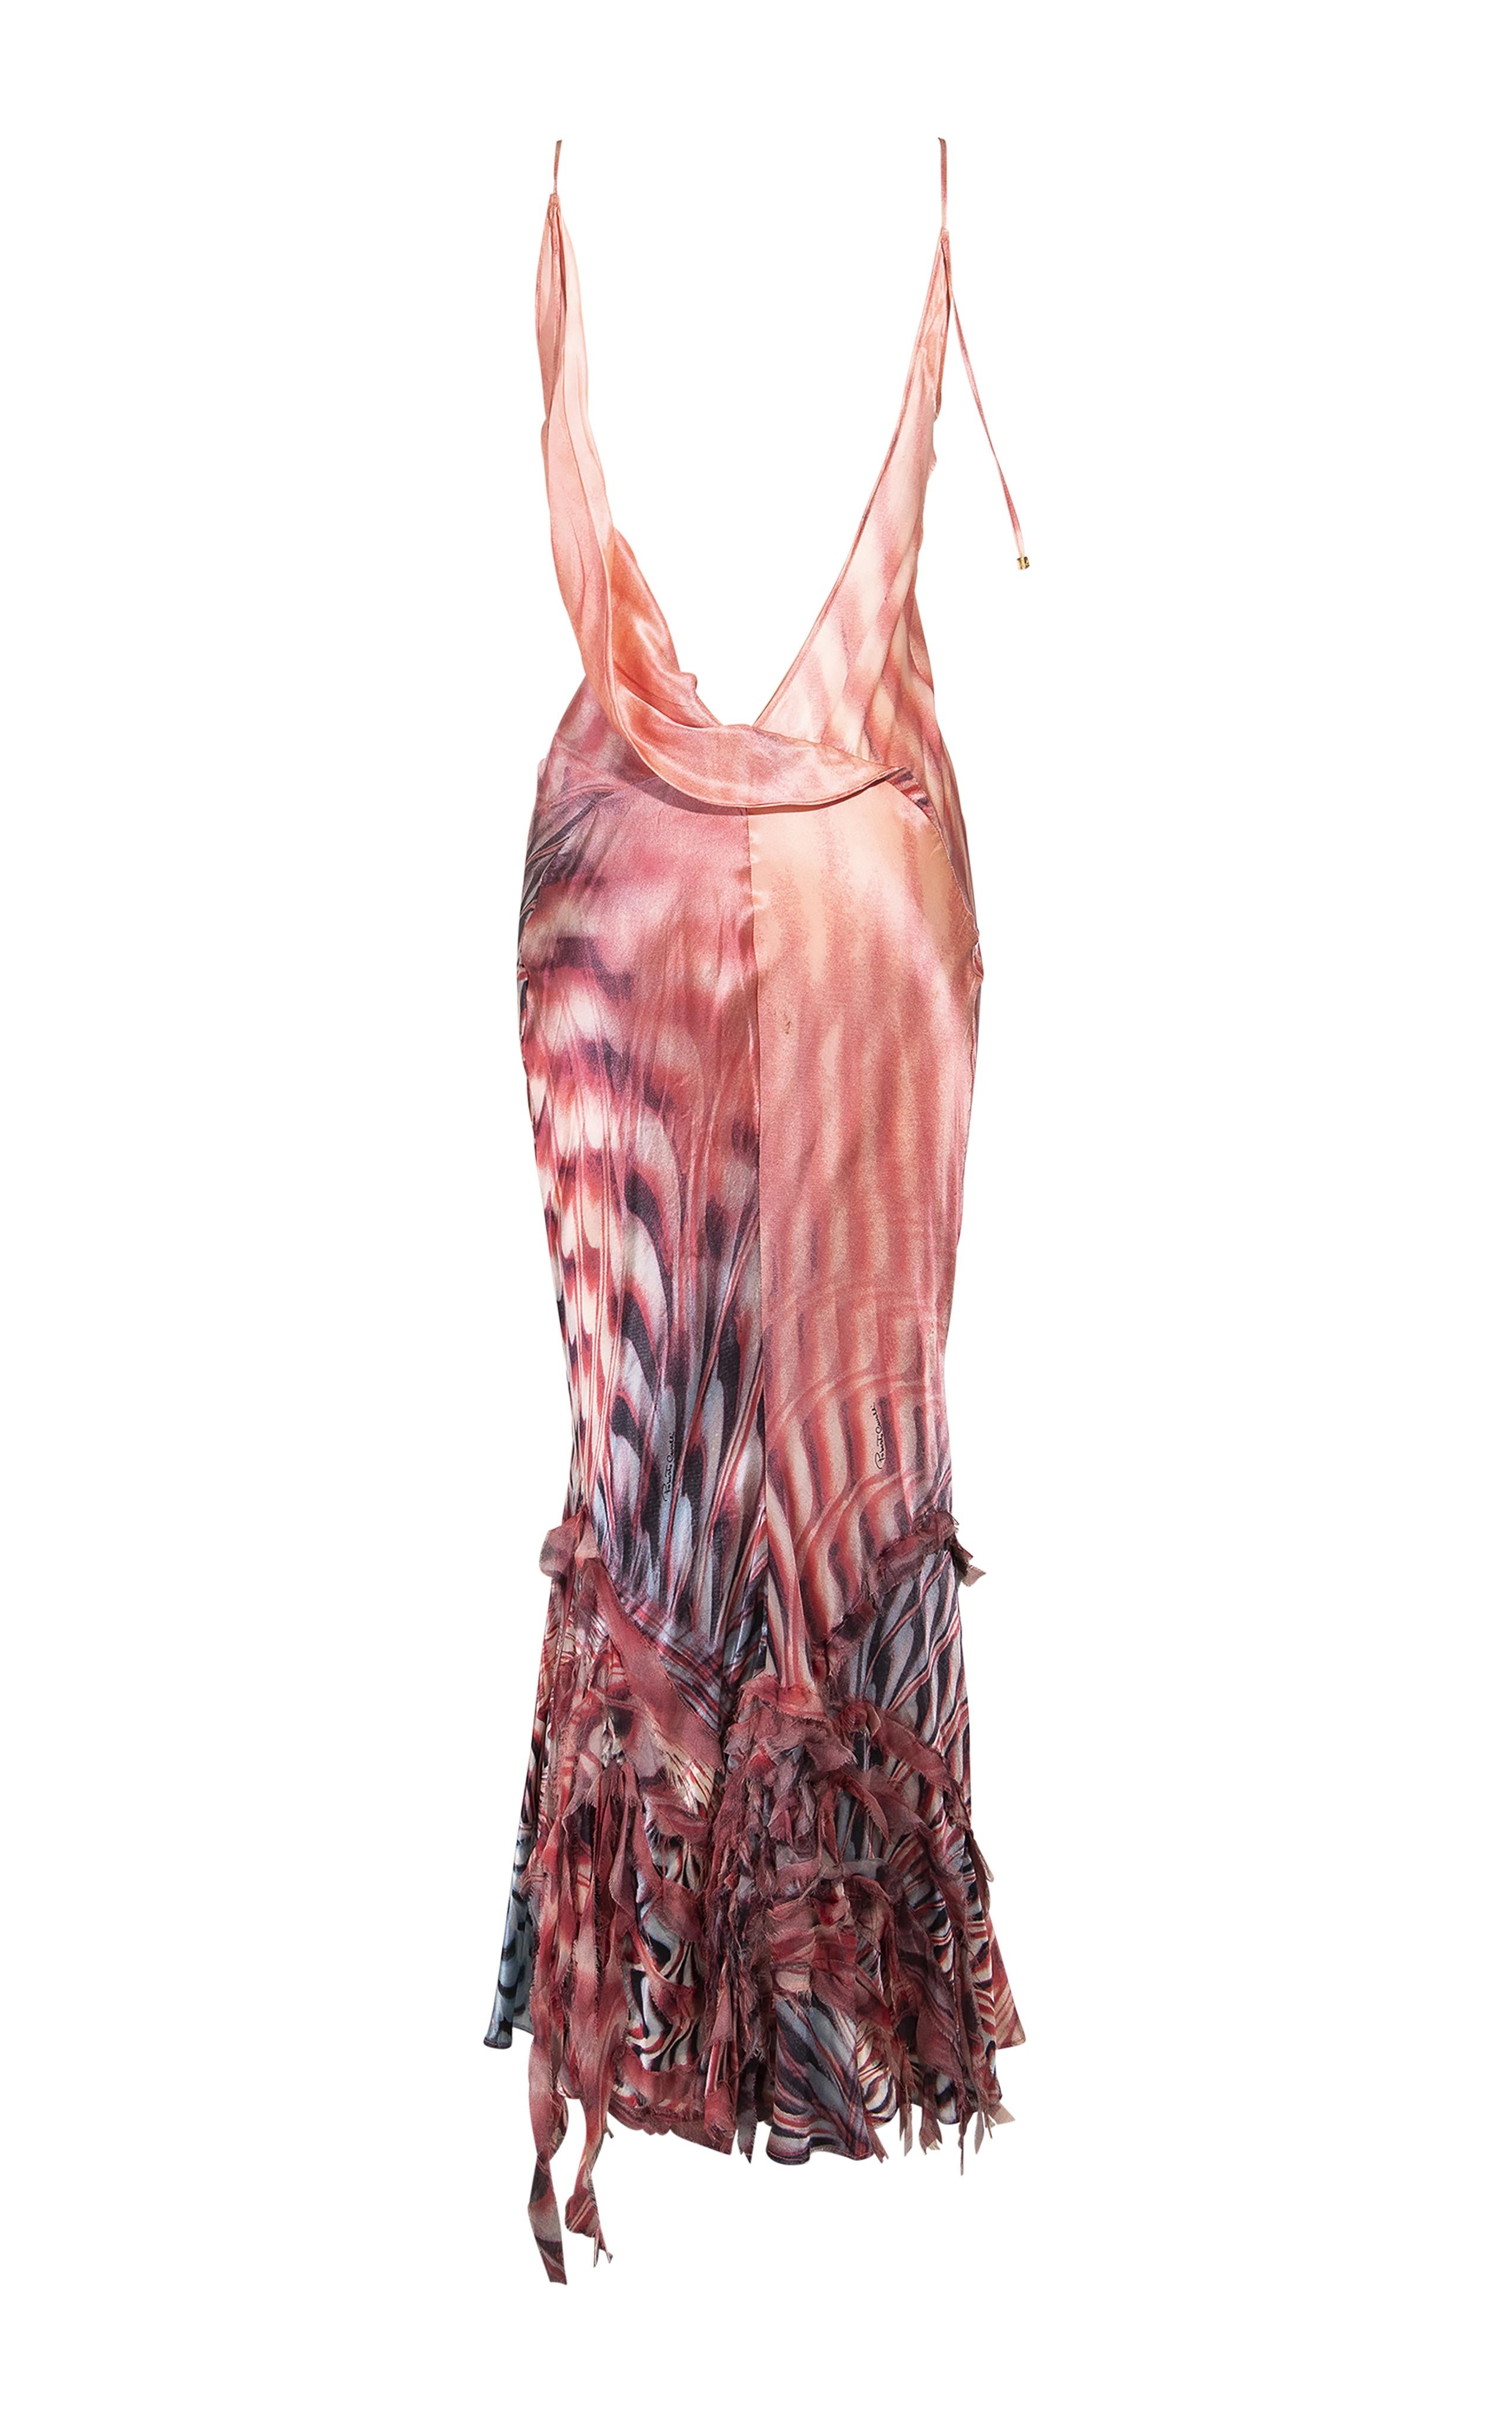 Women's S/S 2001 Roberto Cavalli Psychedelic Silk Slip Gown